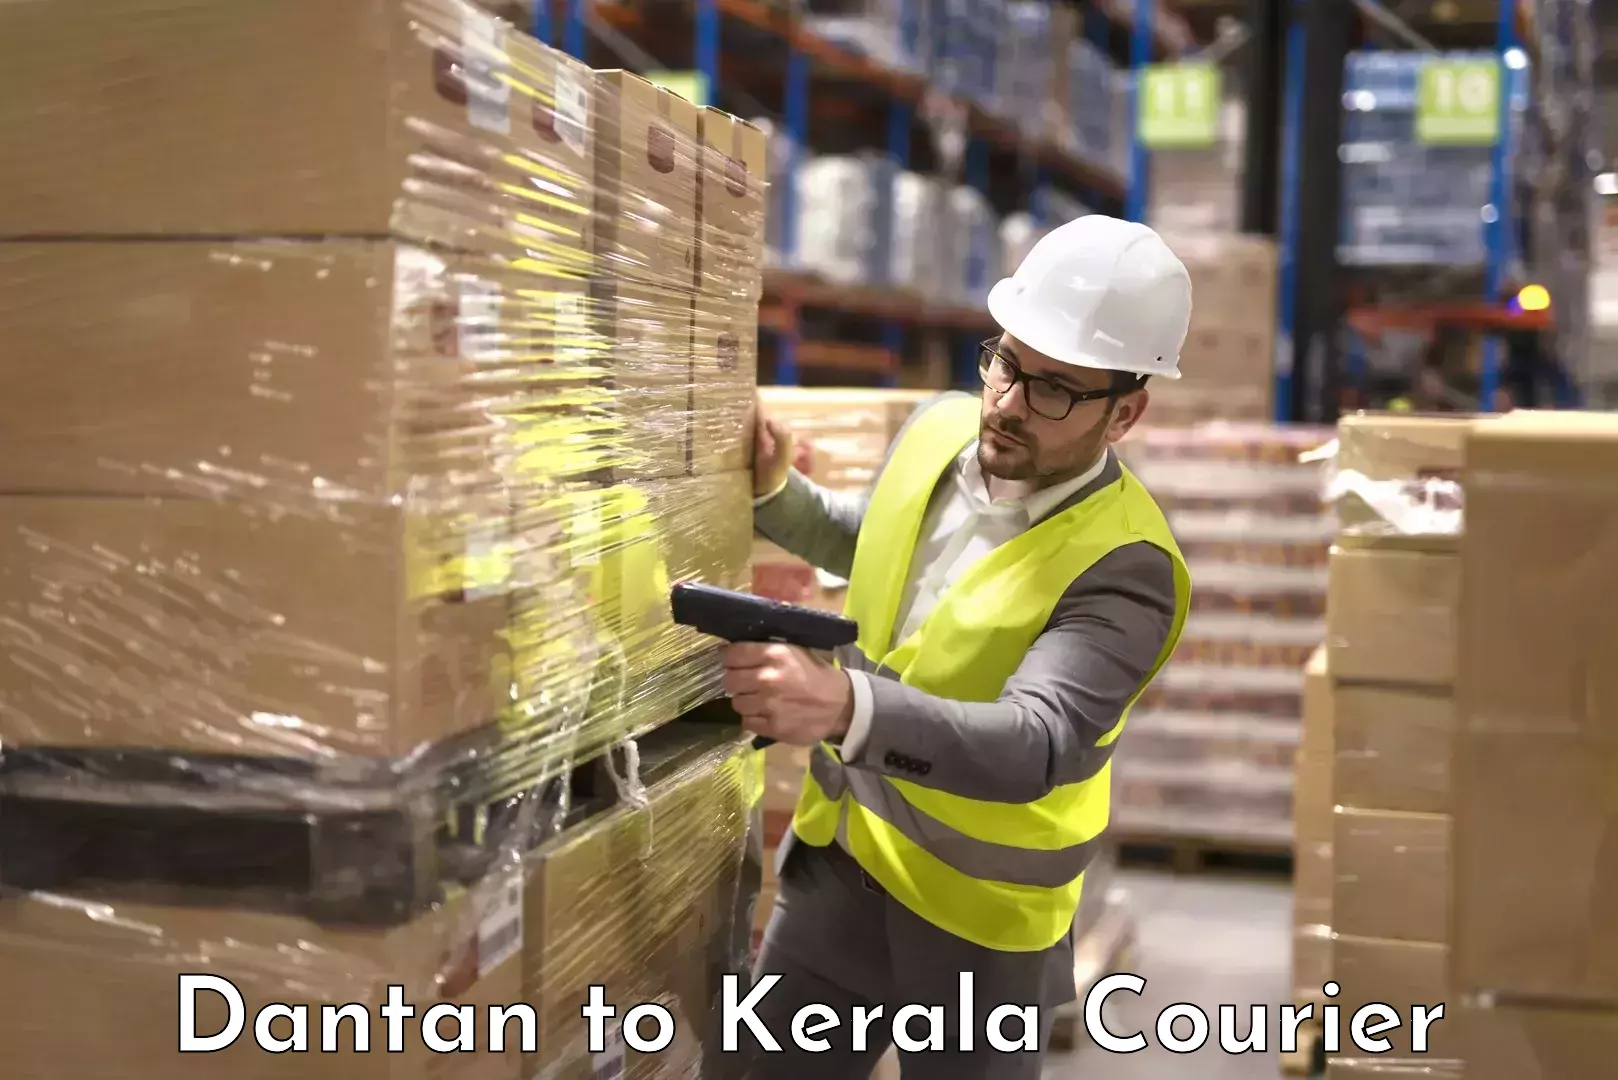 Baggage transport logistics Dantan to Kerala